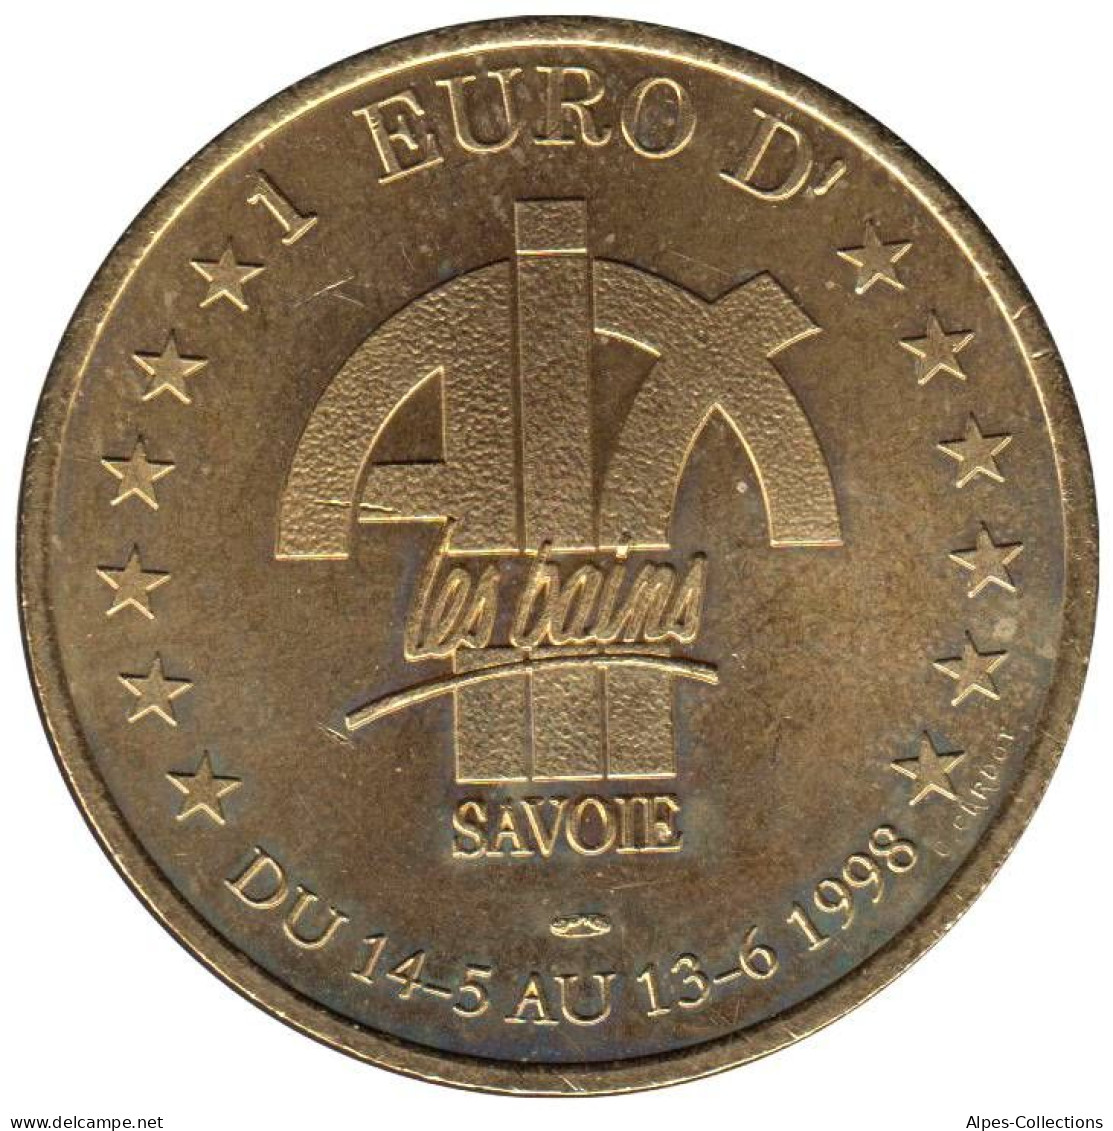 AIX LES BAINS - EU0010.4 - 1 EURO DES VILLES - Réf: T418 - 1998 - Euro Der Städte